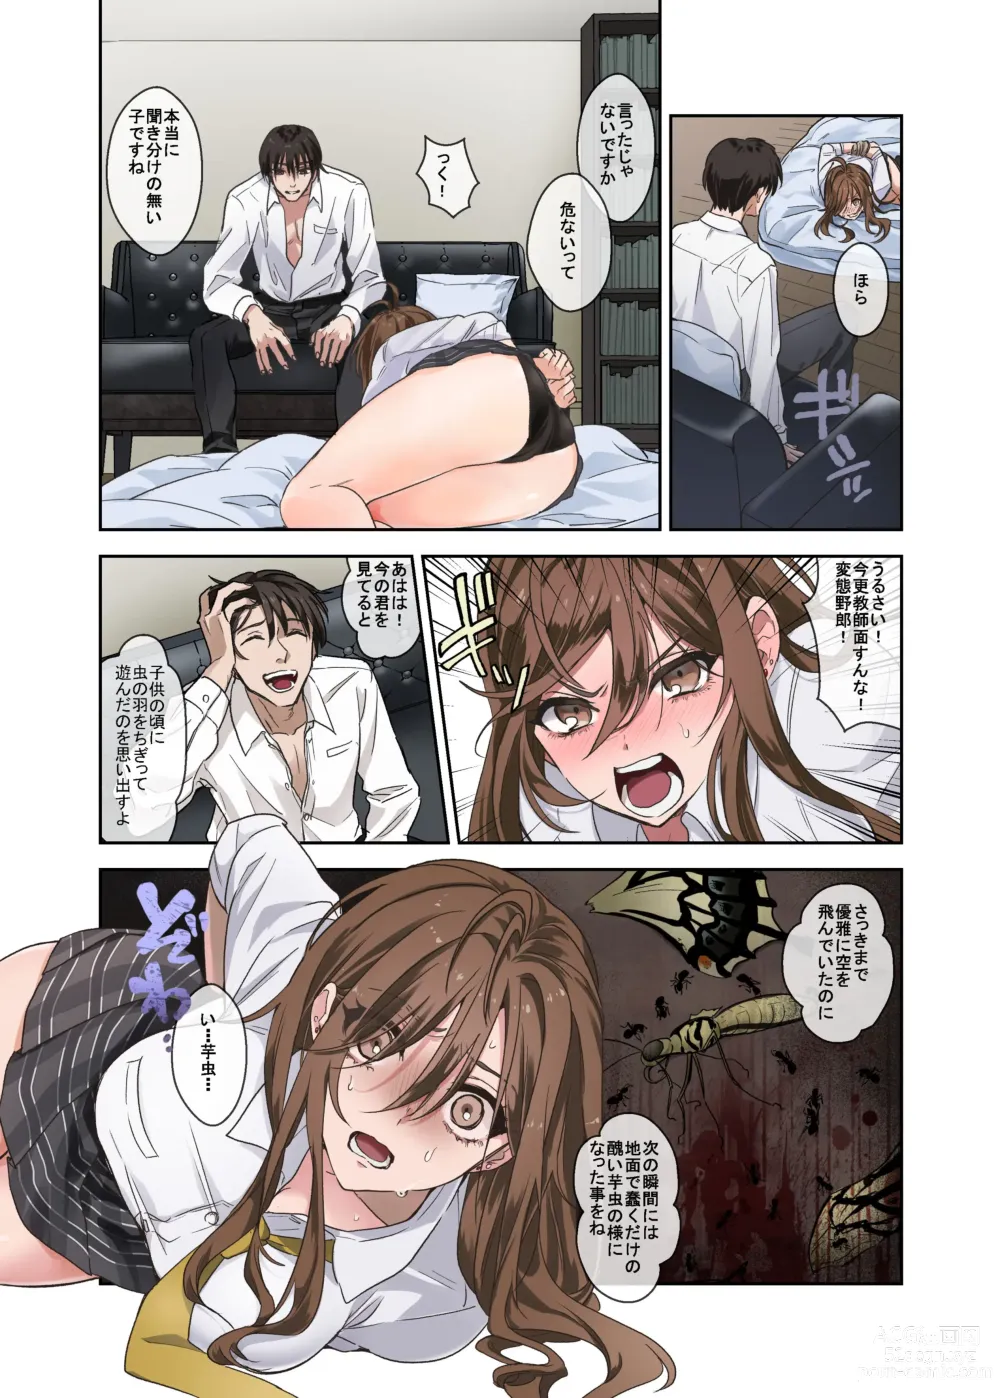 Page 8 of doujinshi 問題生徒はセックスで従順なメスになるので、じっくり躾始めました。